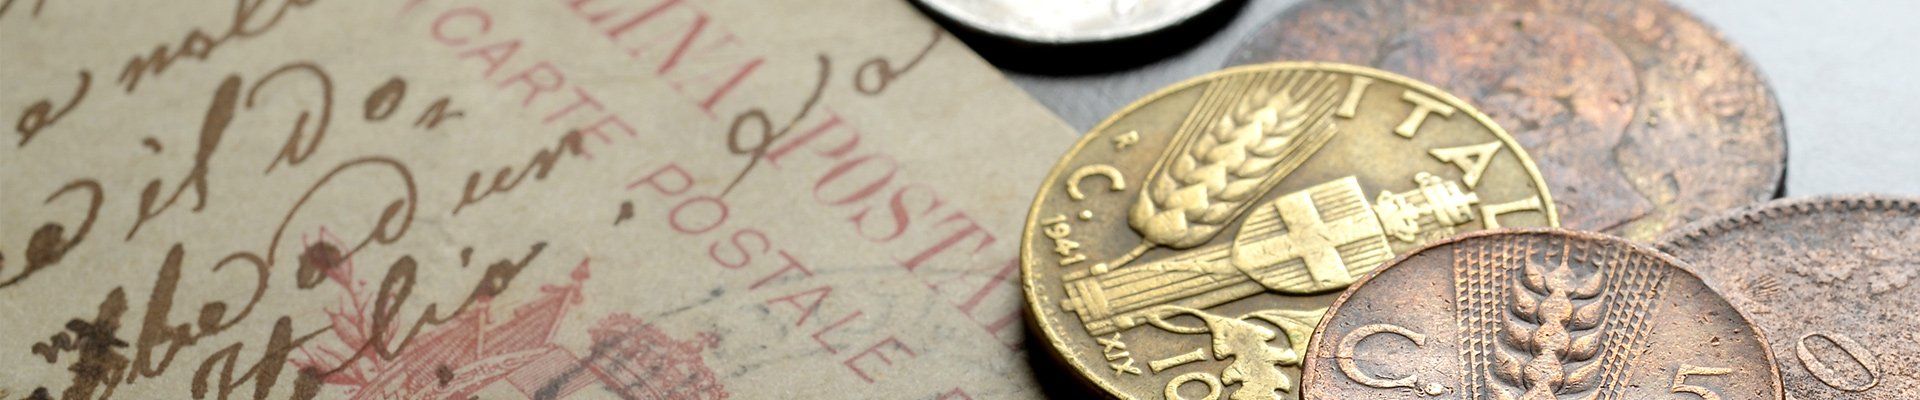 Pièces de monnaie et documents anciens.